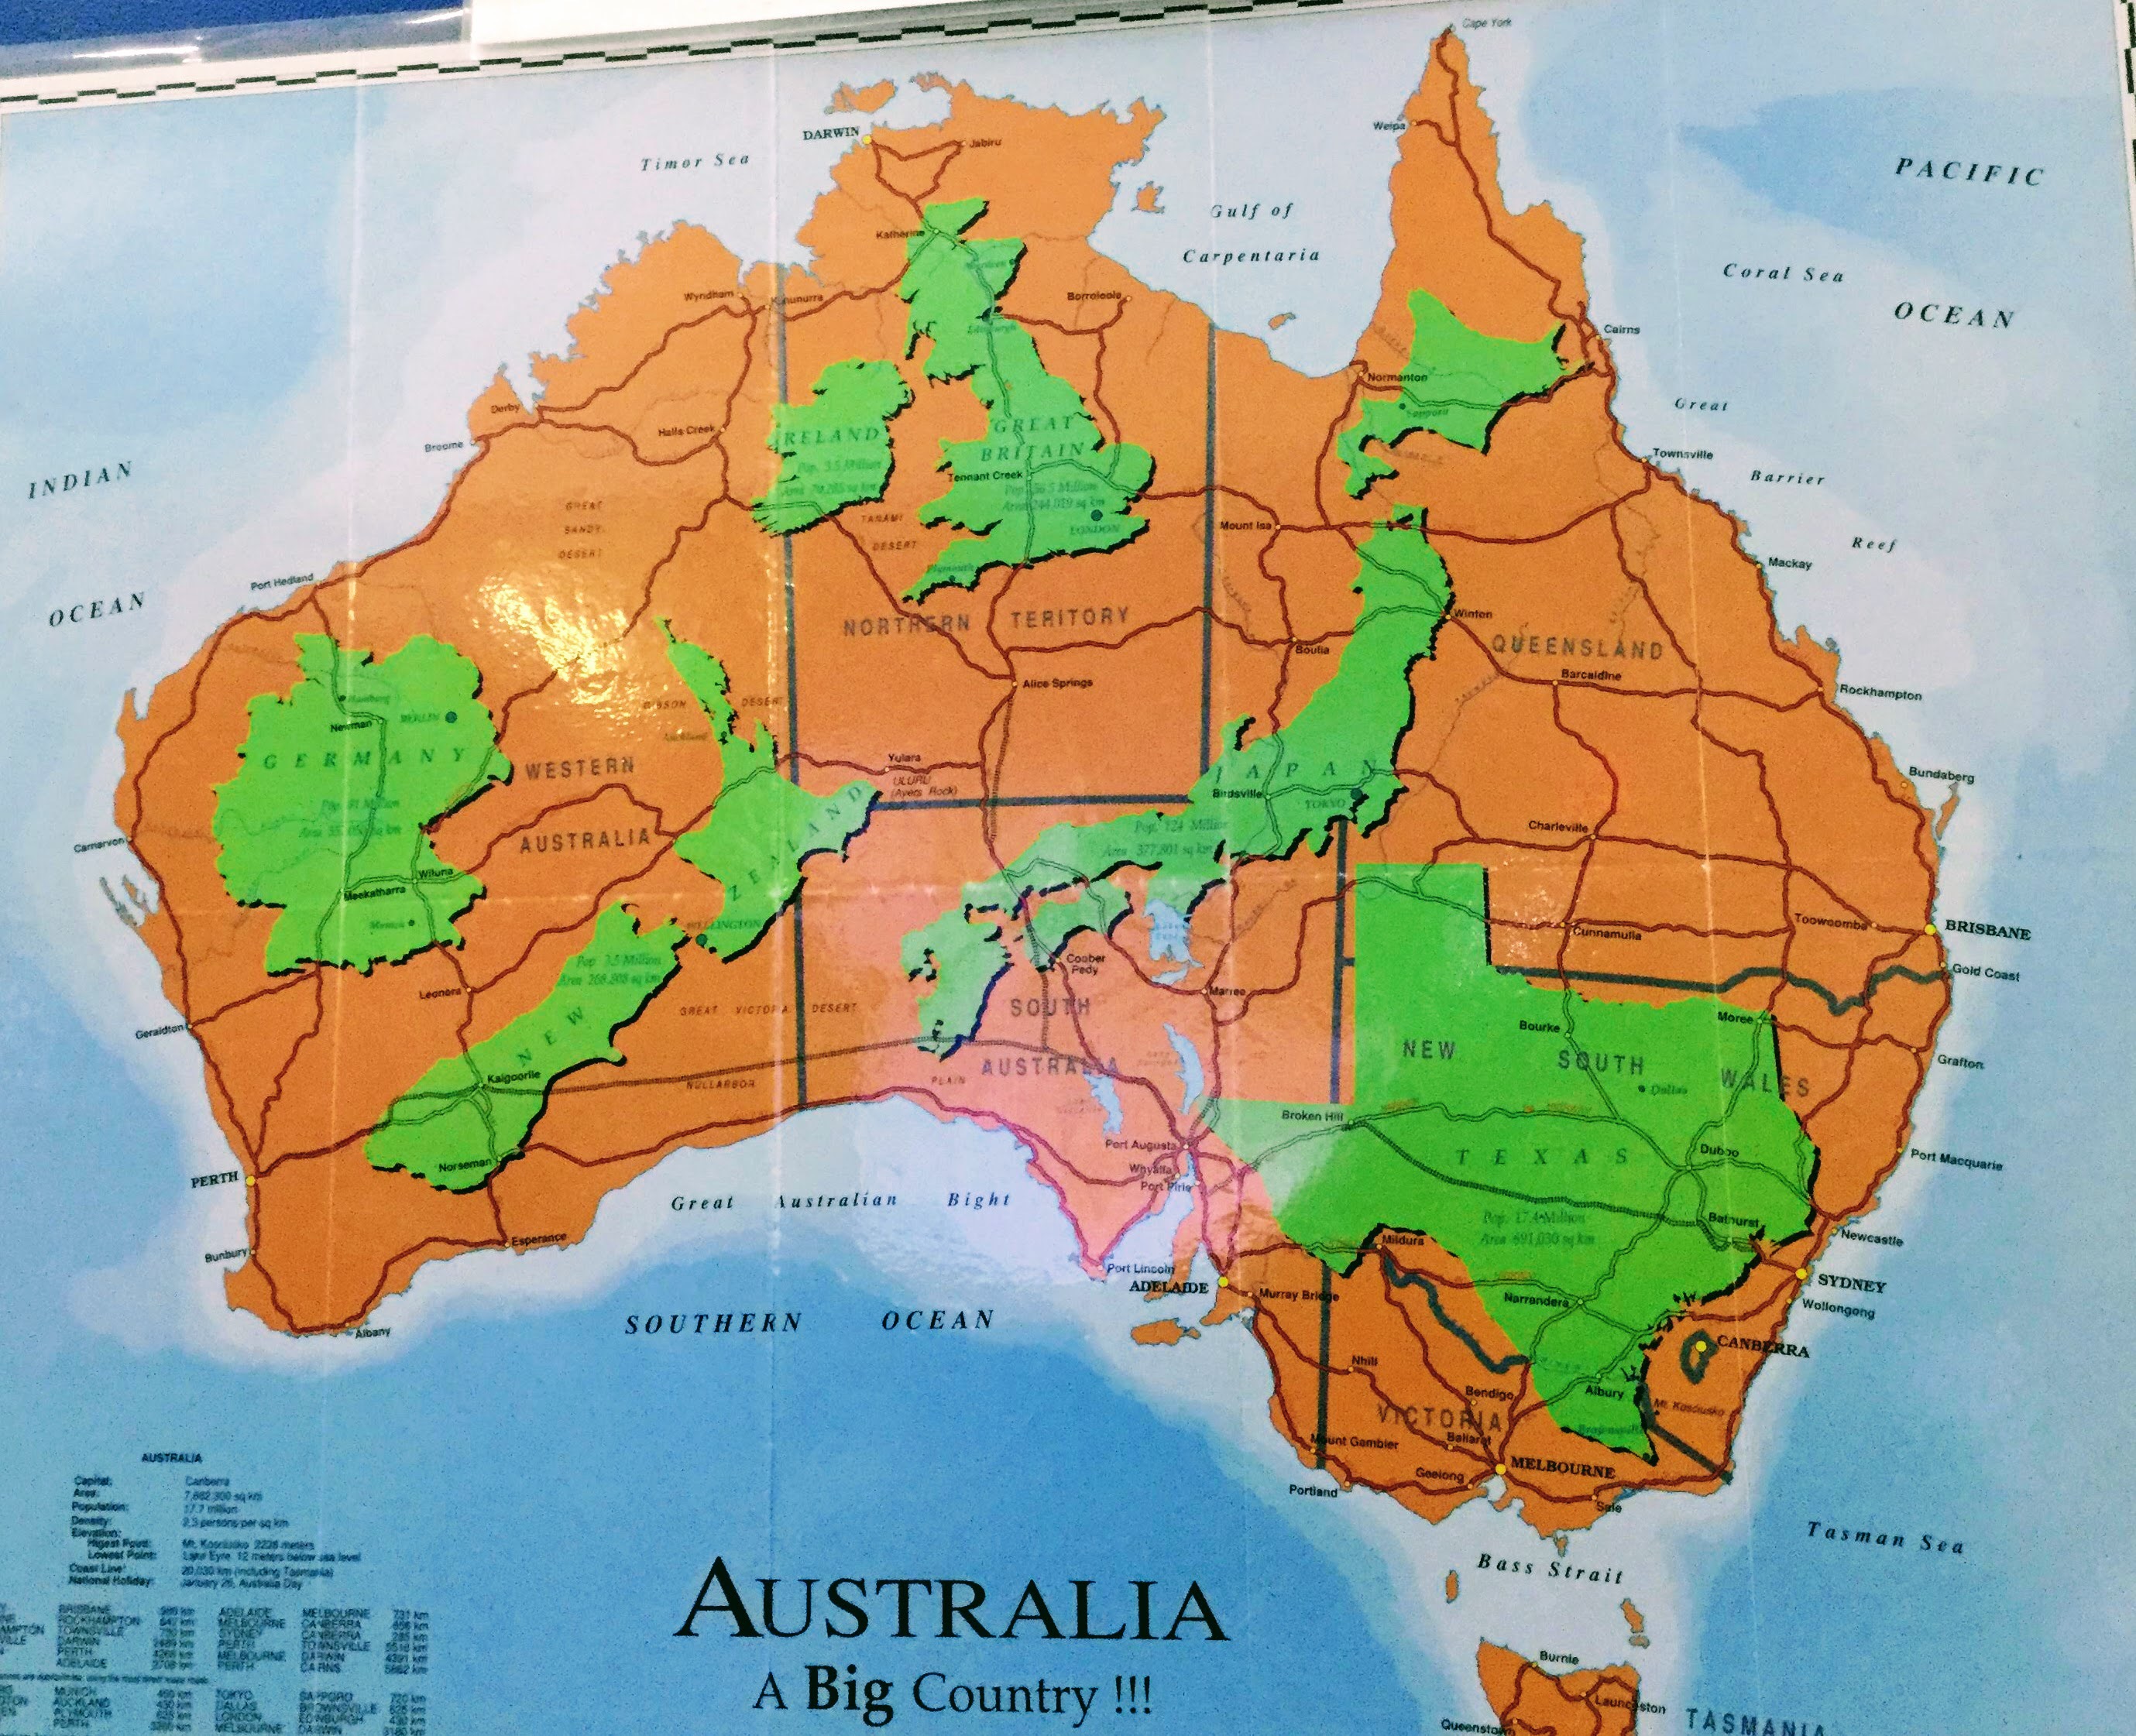 知って得するオーストラリア大陸の地理 キャンピングカーで旅するオーストラリア大陸